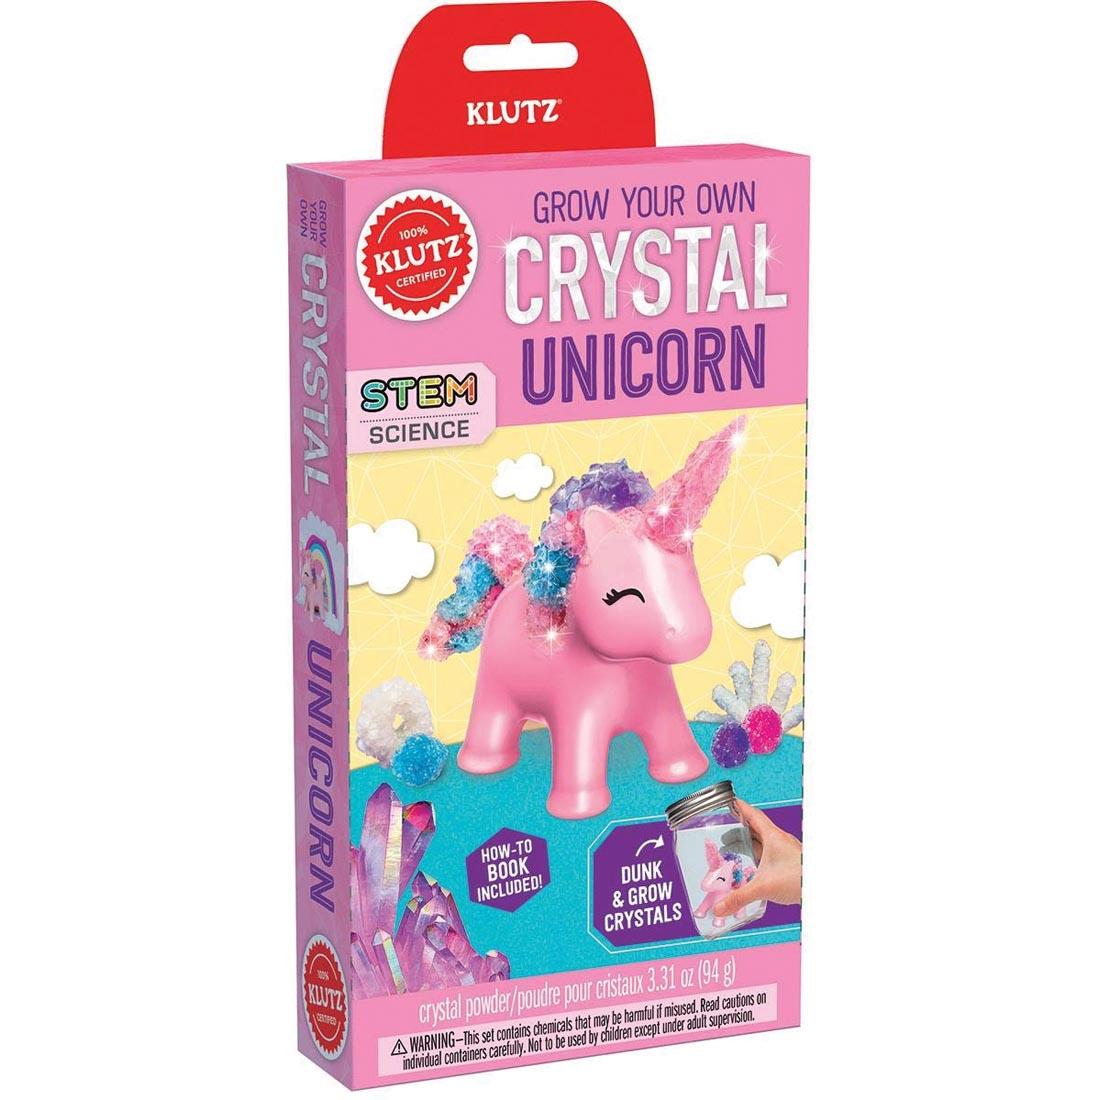 Grow Your Own Crystal Unicorn